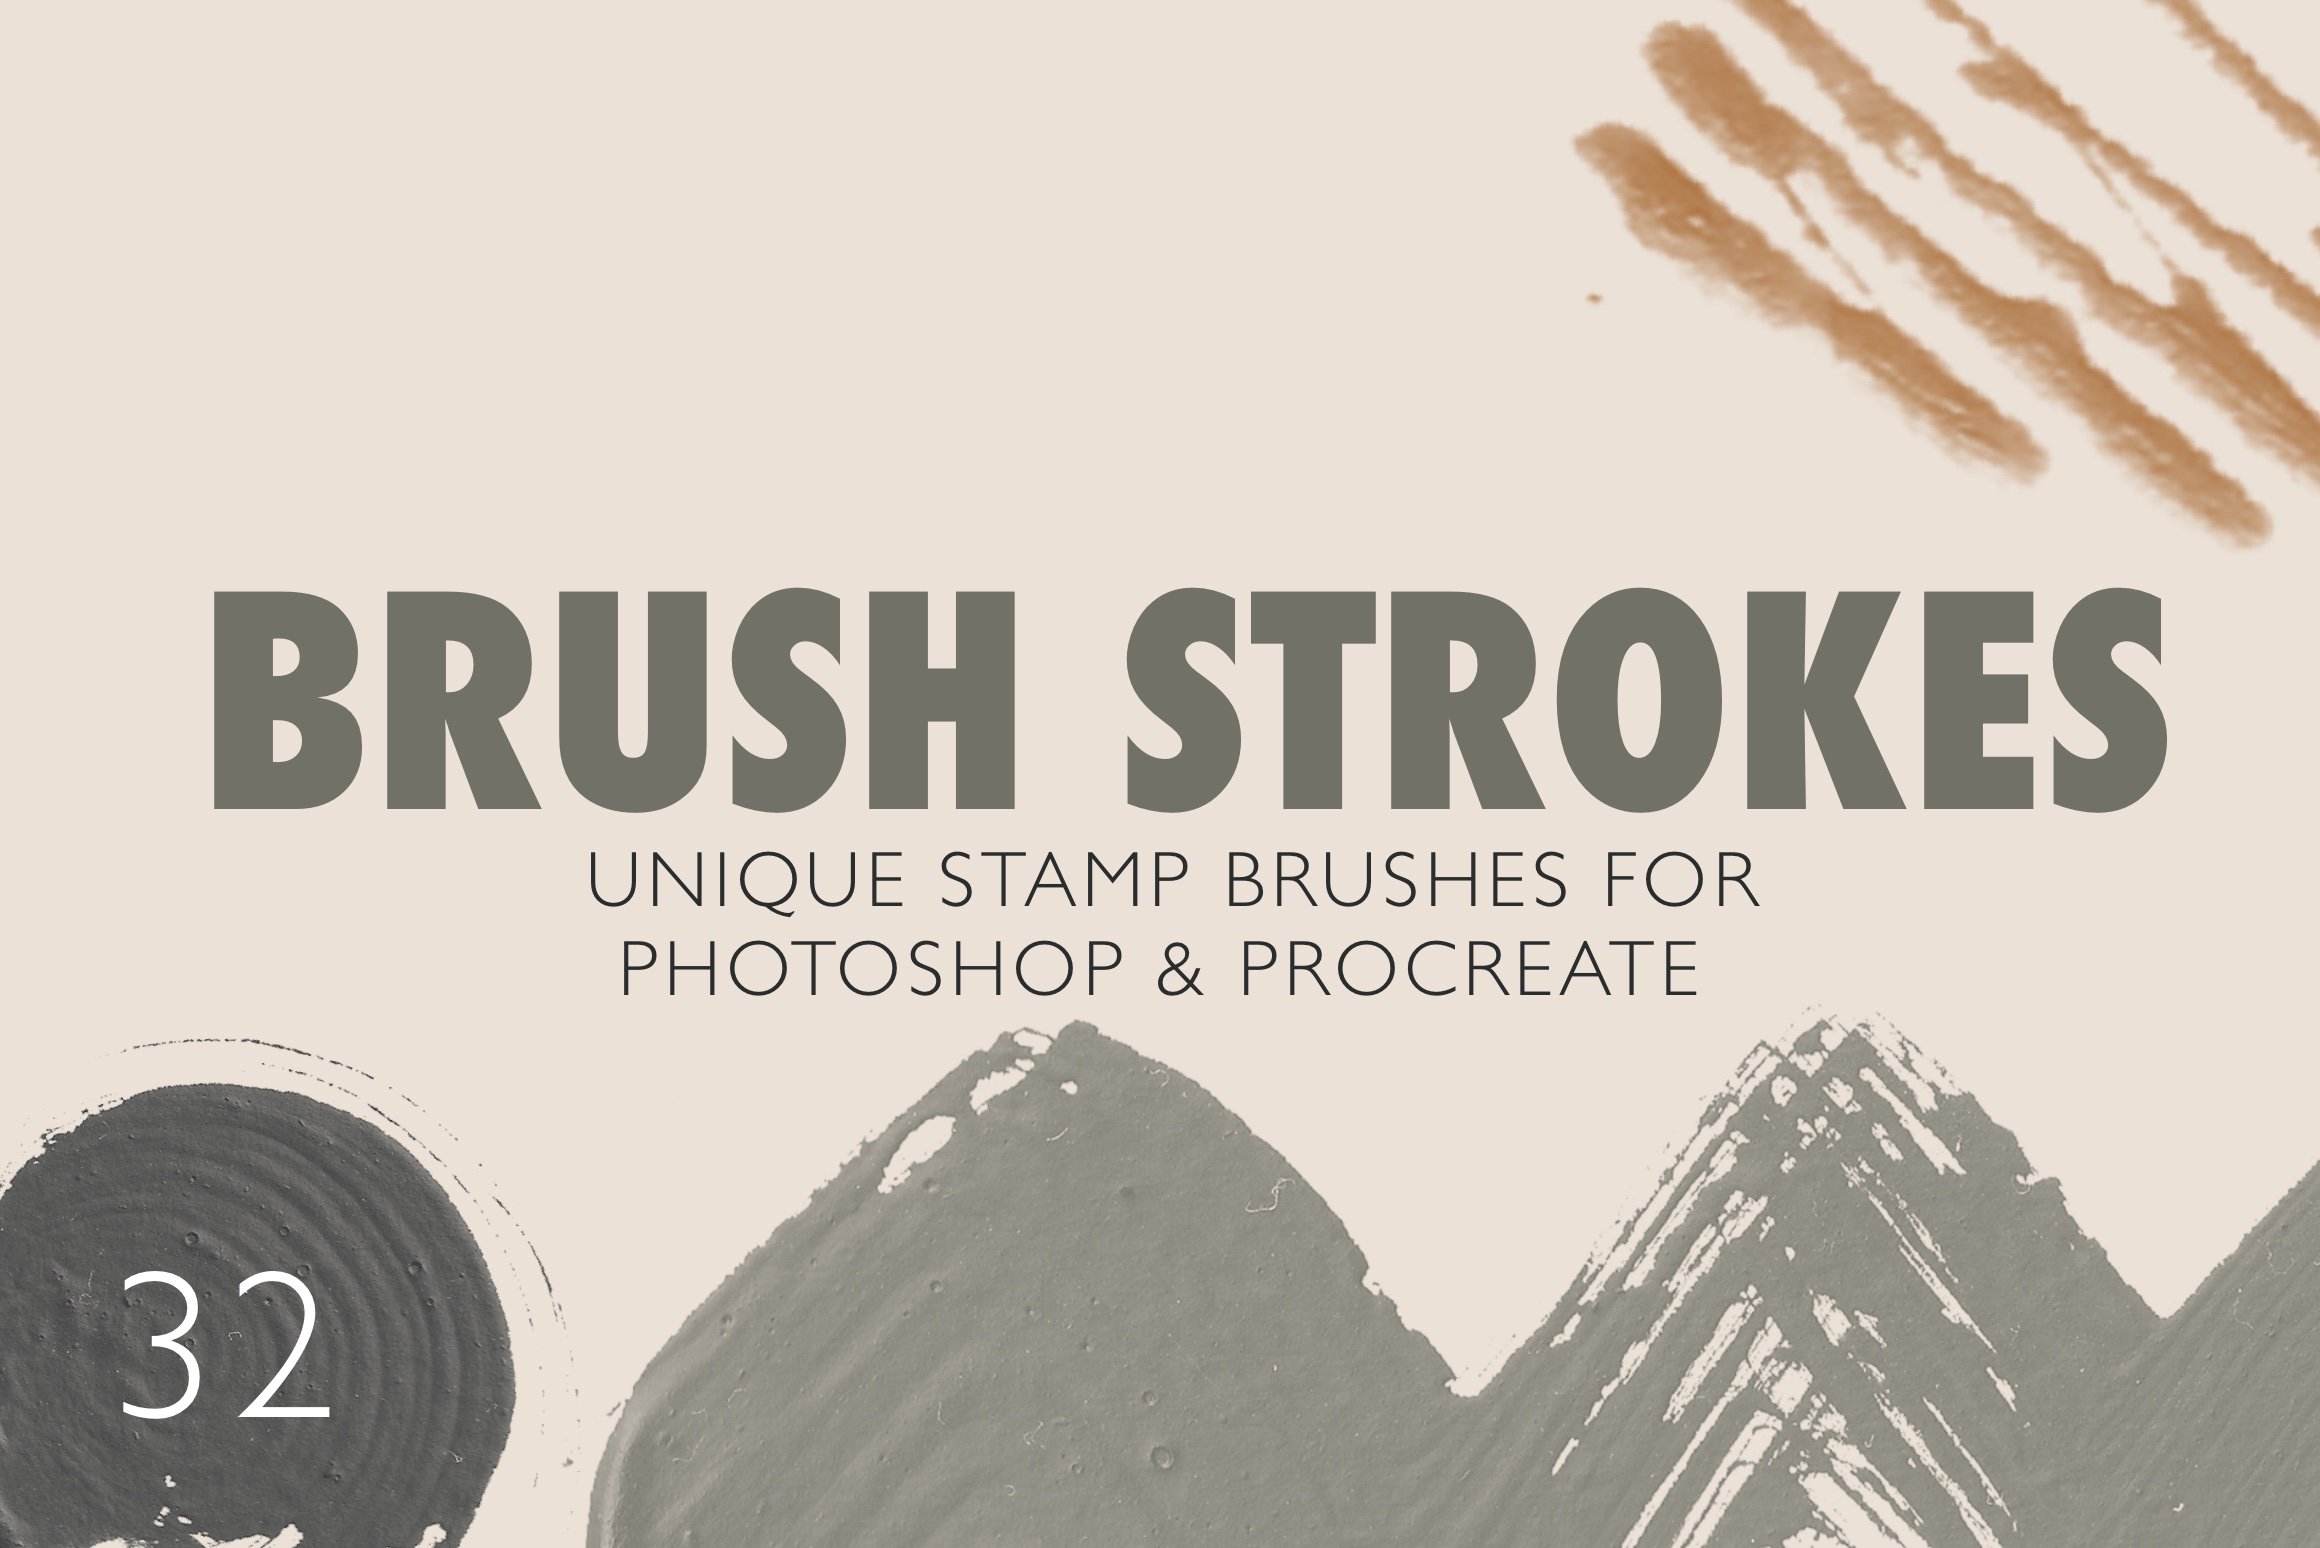 32 Stamp brushes Photoshop/Procreatecover image.